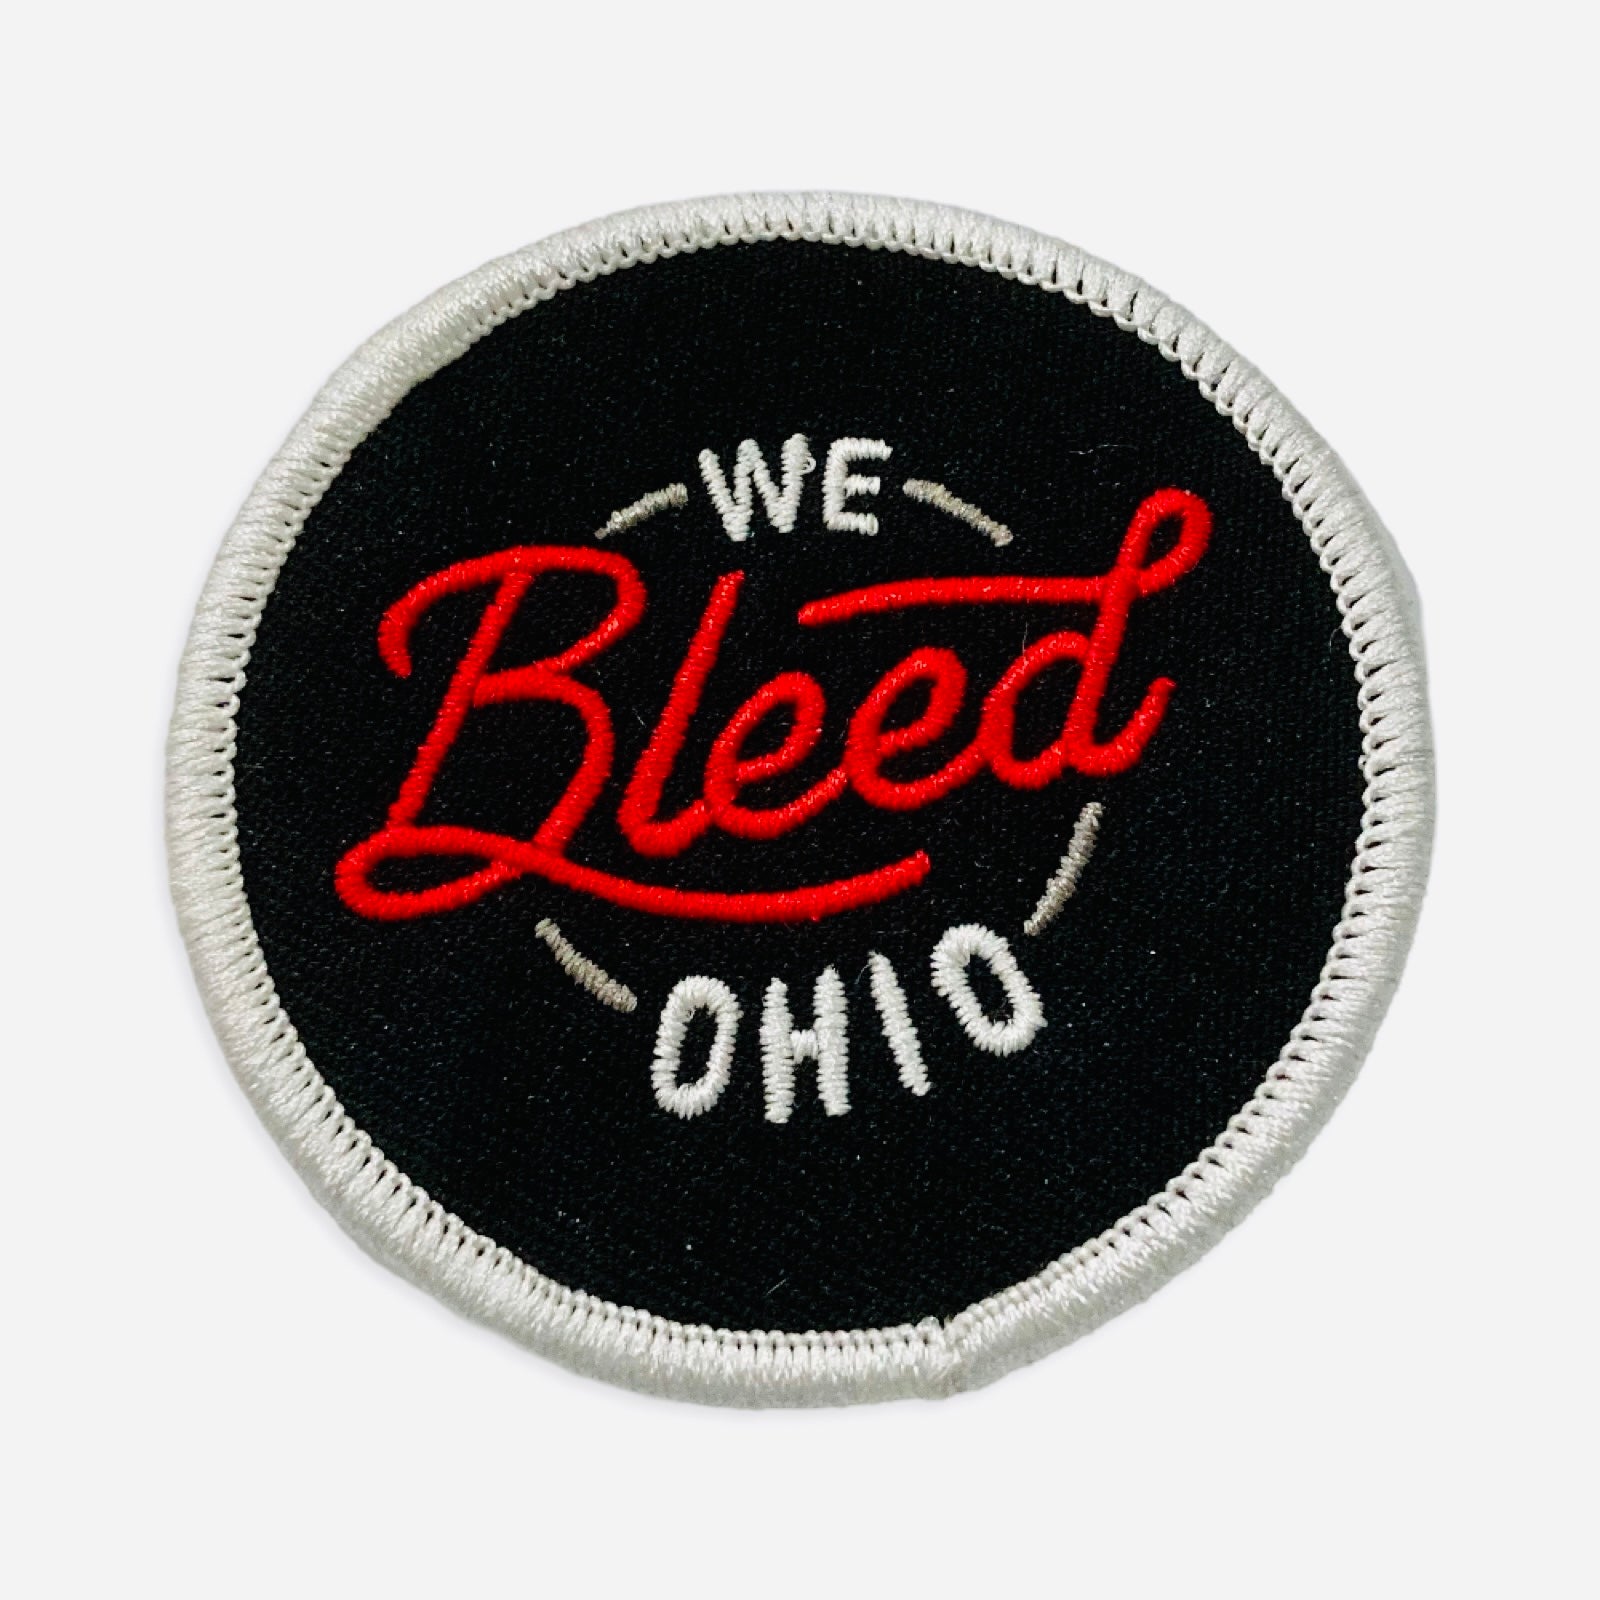 Patches - We Bleed Ohio, Patches, WeBleedOhio, WeBleedOhio